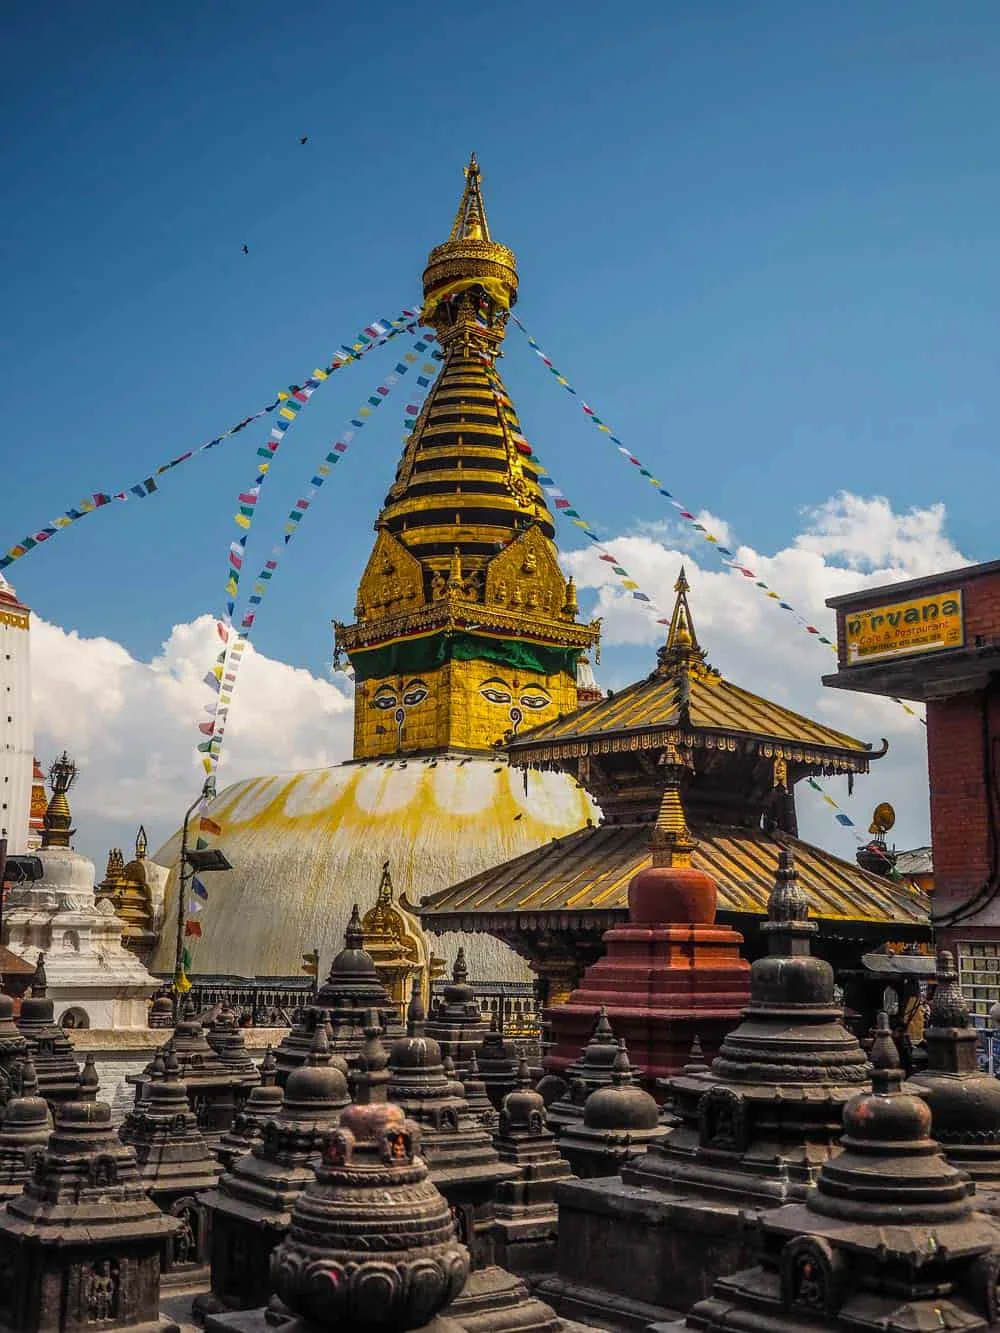 MonkeyTemple/Swayambhunath